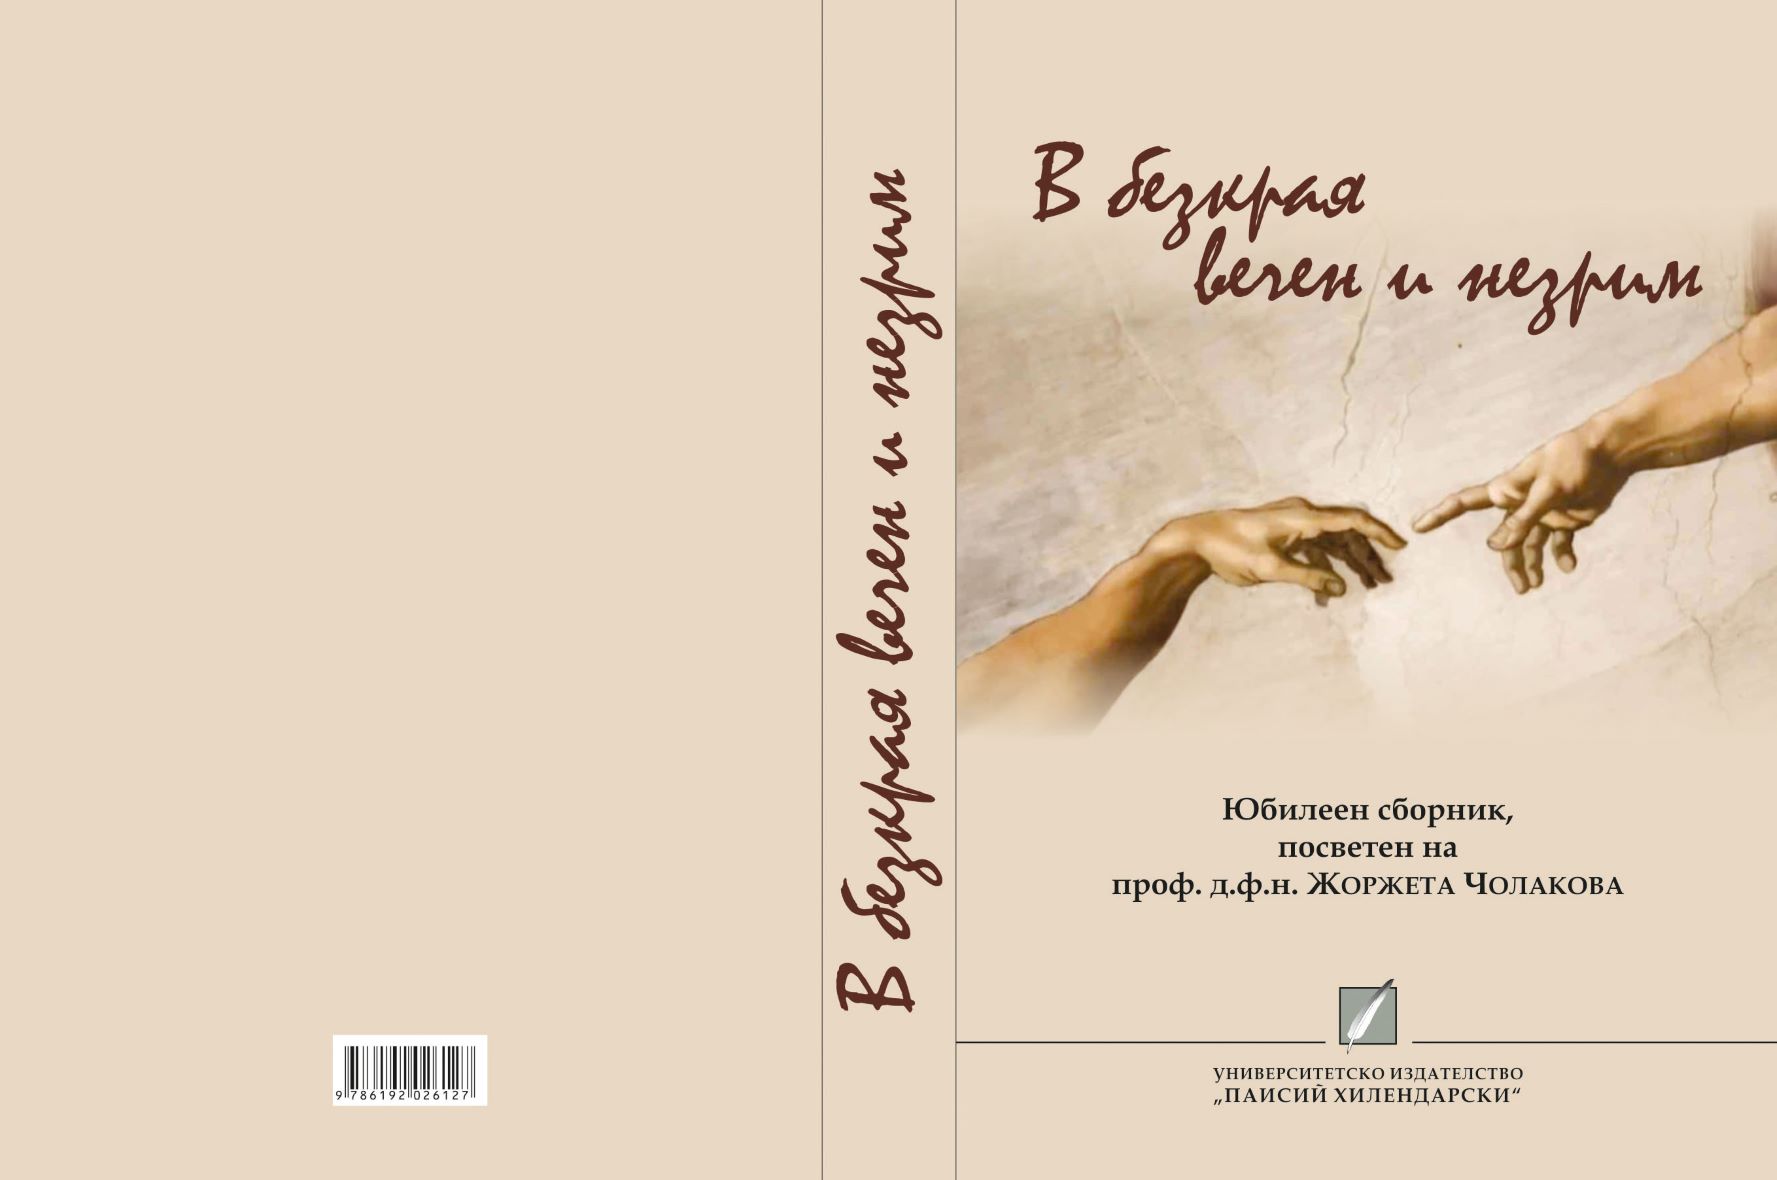 Verbum de verbo sive sententia desententia Cover Image